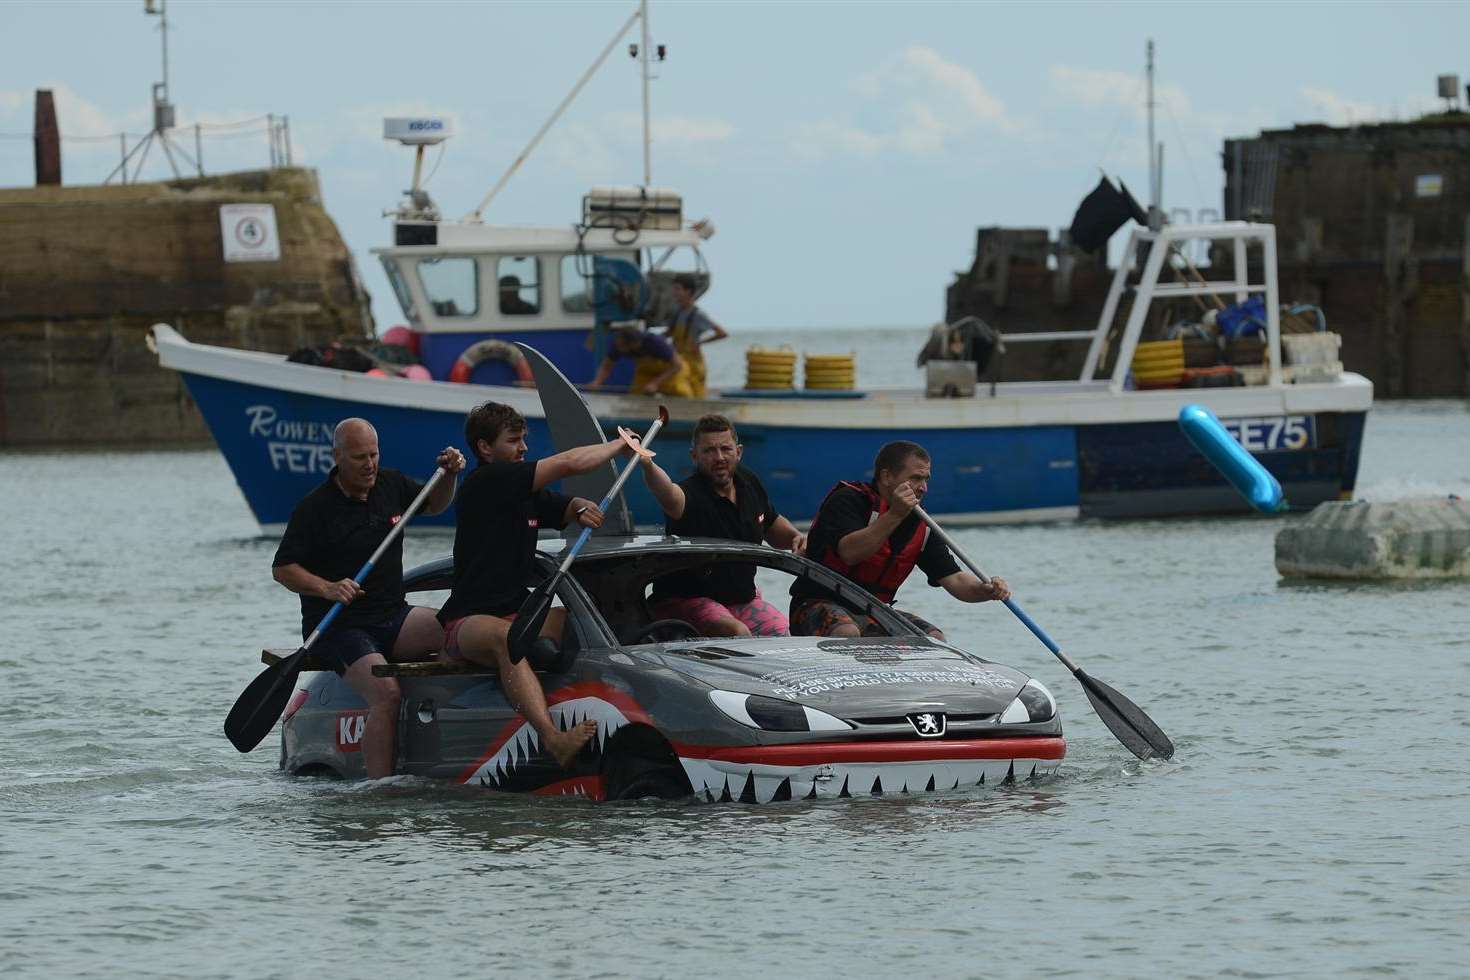 KAP Folkestone Raft Race team